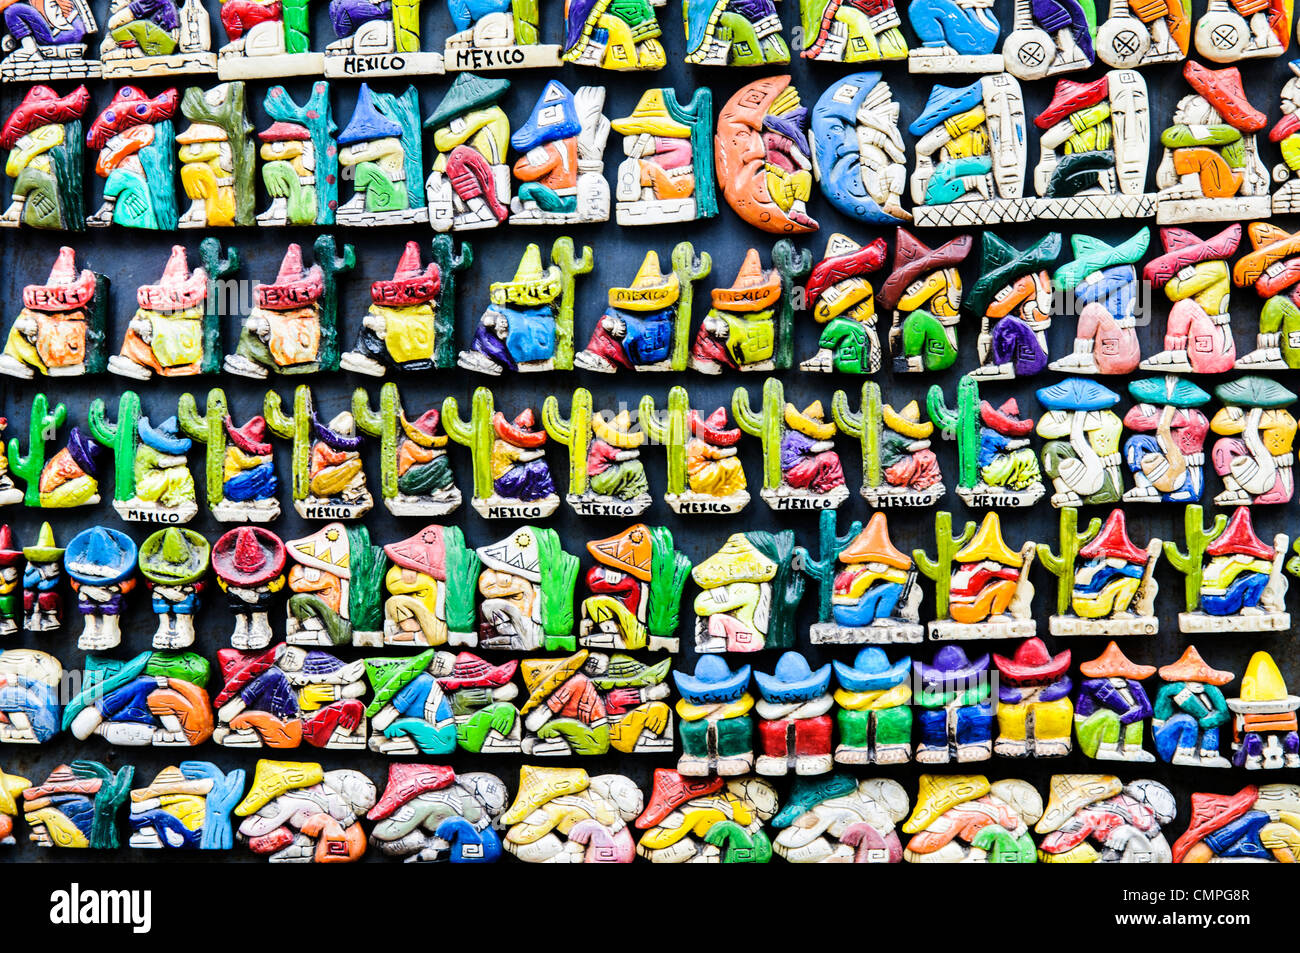 CHICHEN ITZA, Mexiko - Marktständen verkaufen Kühlschrank Magnete als lokale Souvenirs und Kunsthandwerk, die Touristen in Chichen Itza Maya Ruinen archäologische Stätte in Mexiko. Stockfoto